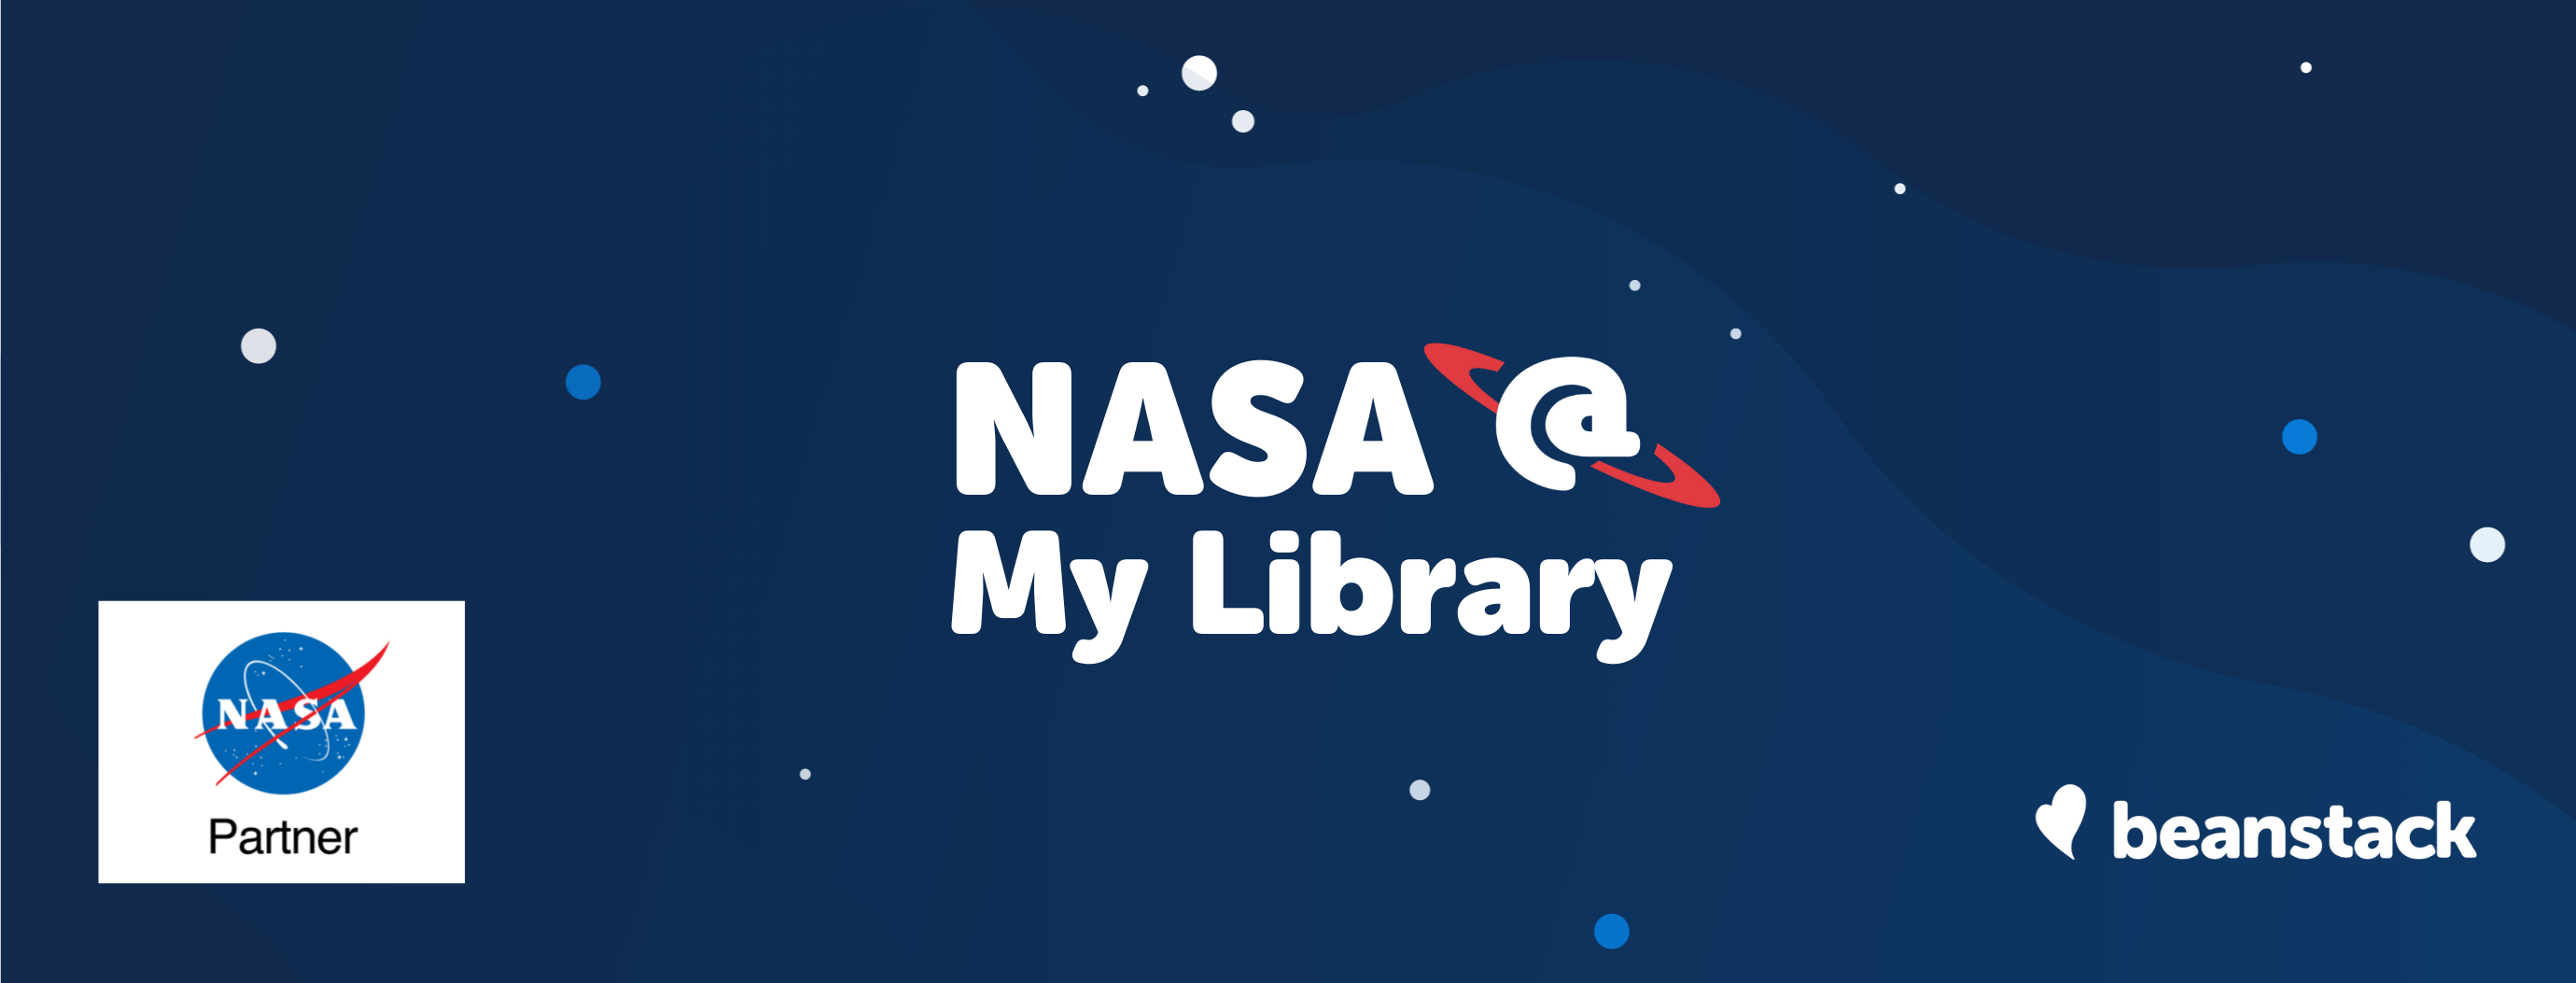 NASA @ My Library Banner (1)